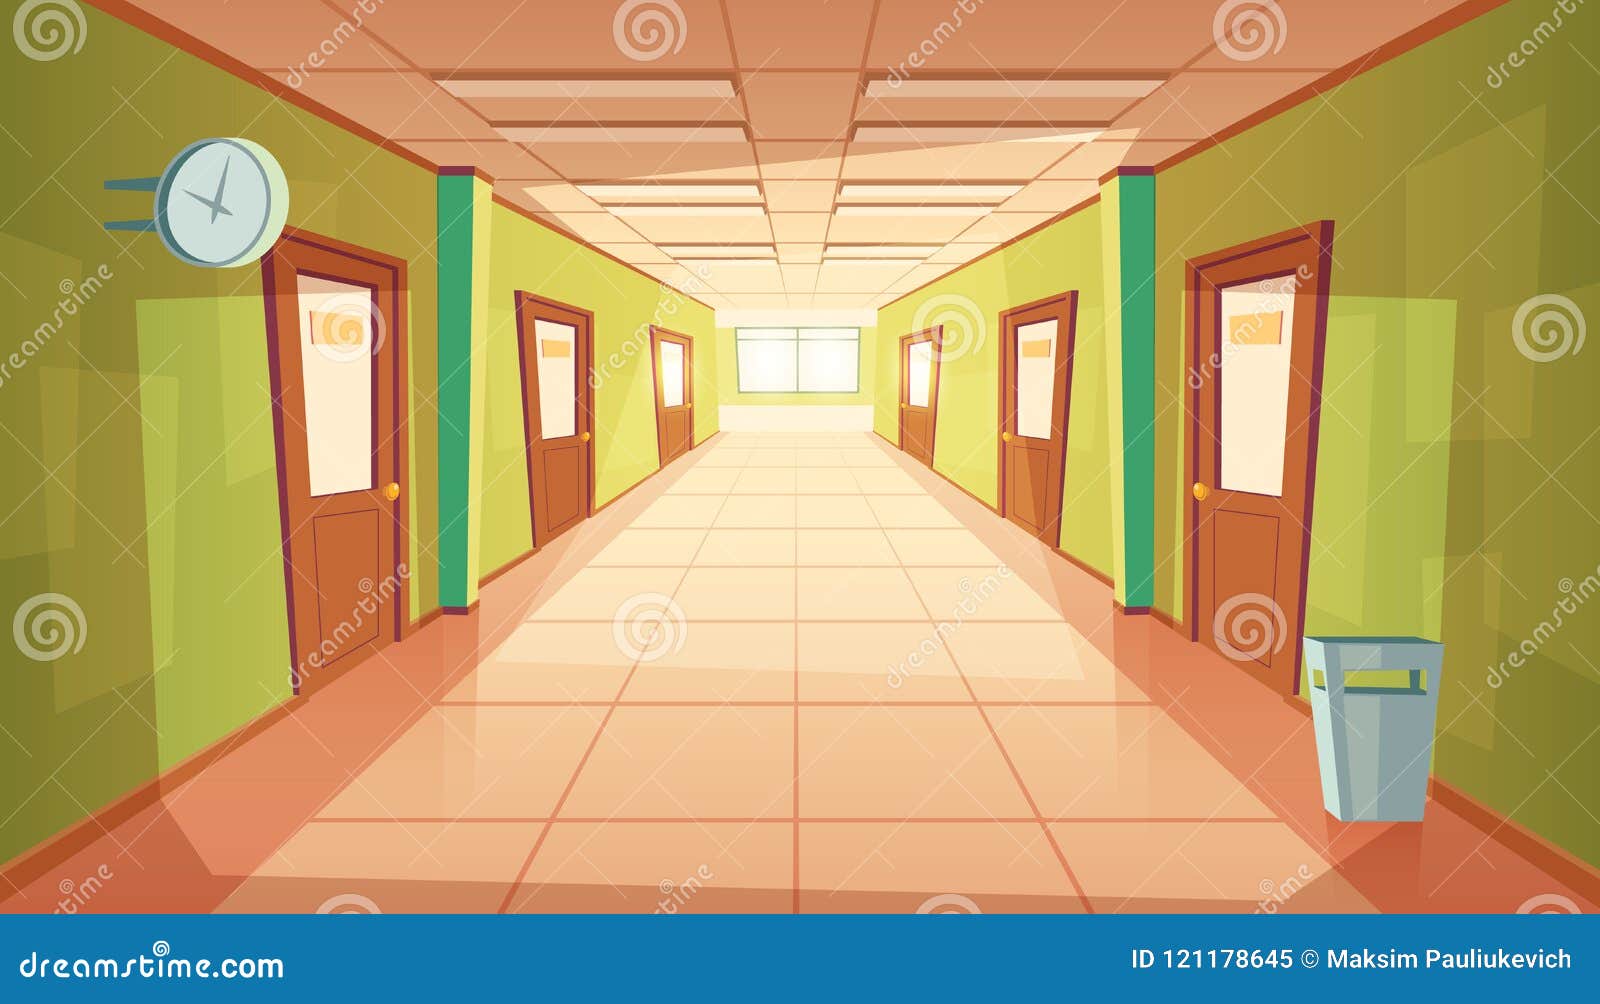  cartoon school or college hallway, university corridor